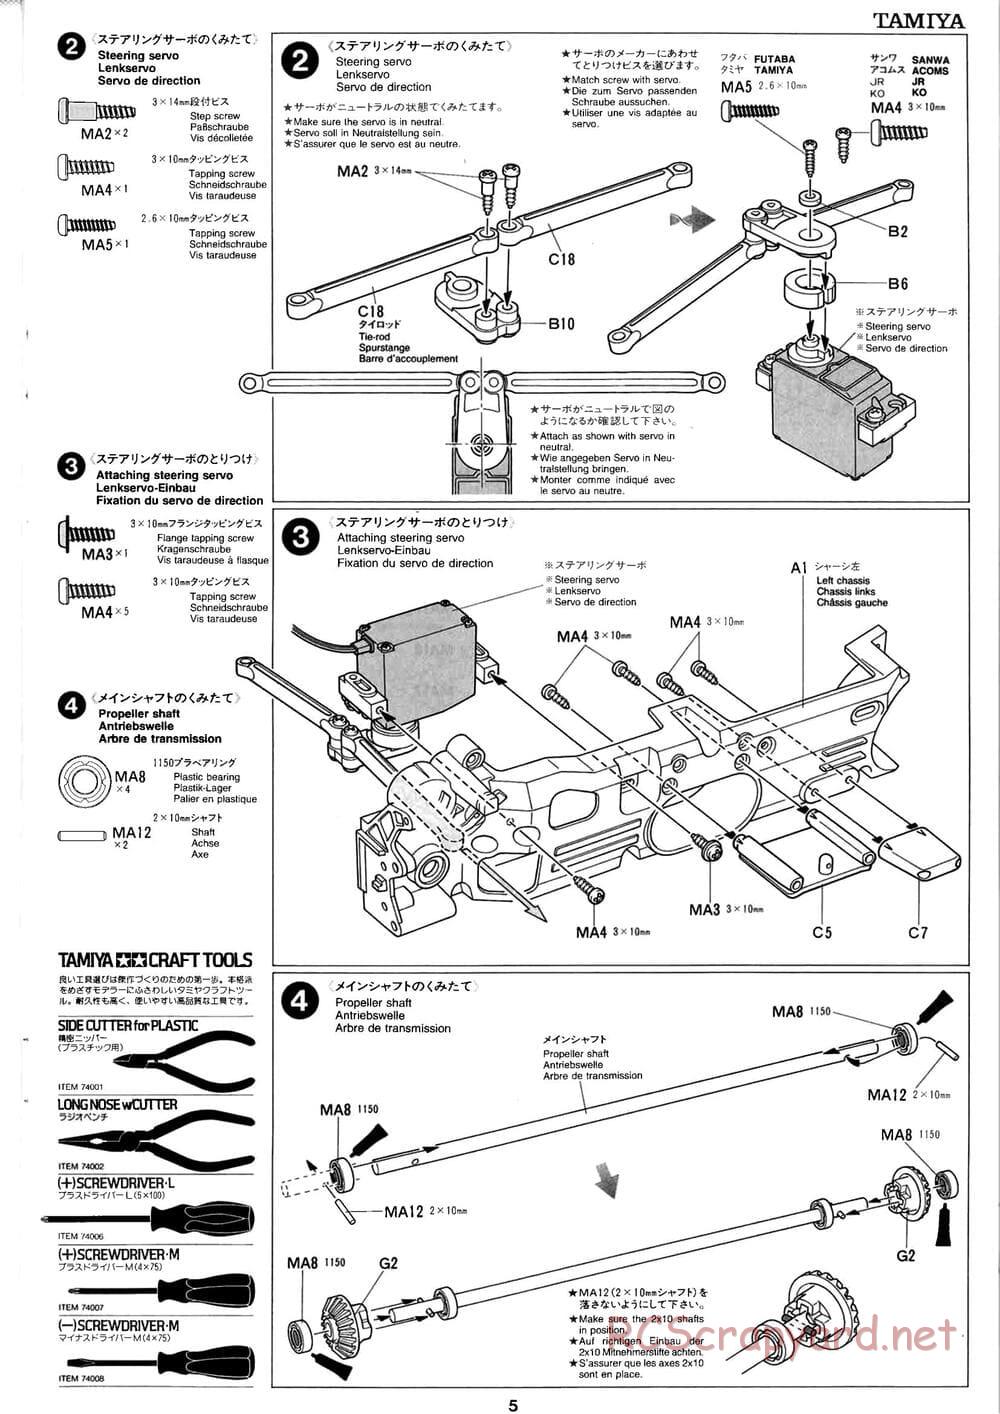 Tamiya - Baja Champ - TL-01B Chassis - Manual - Page 5